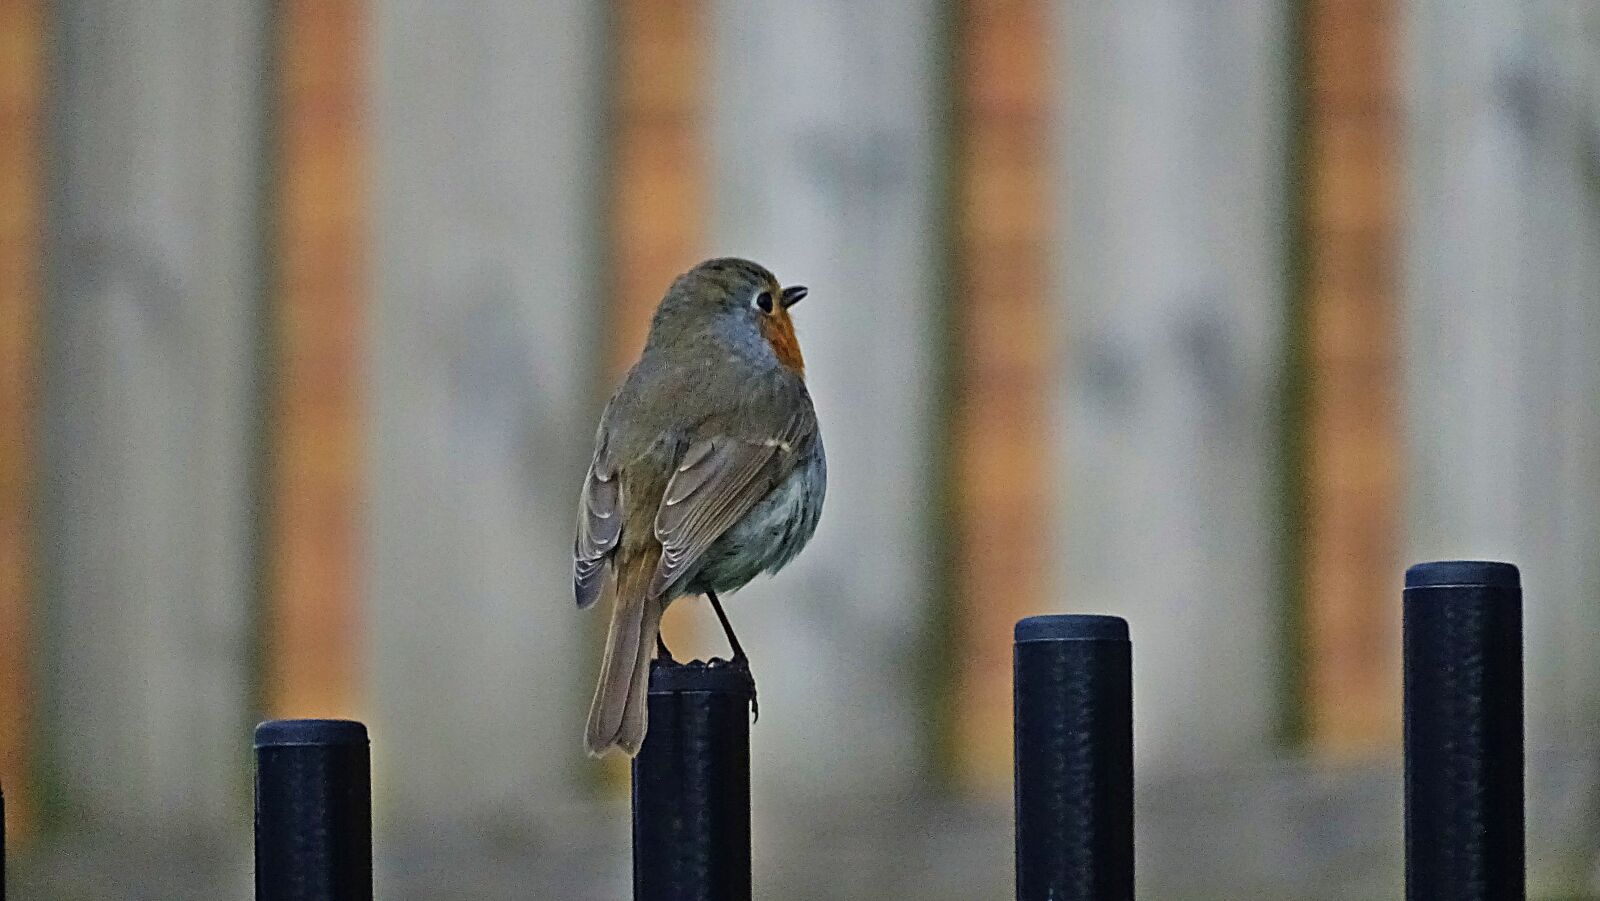 Sony Cyber-shot DSC-HX350 sample photo. Robin, bird, songbird photography